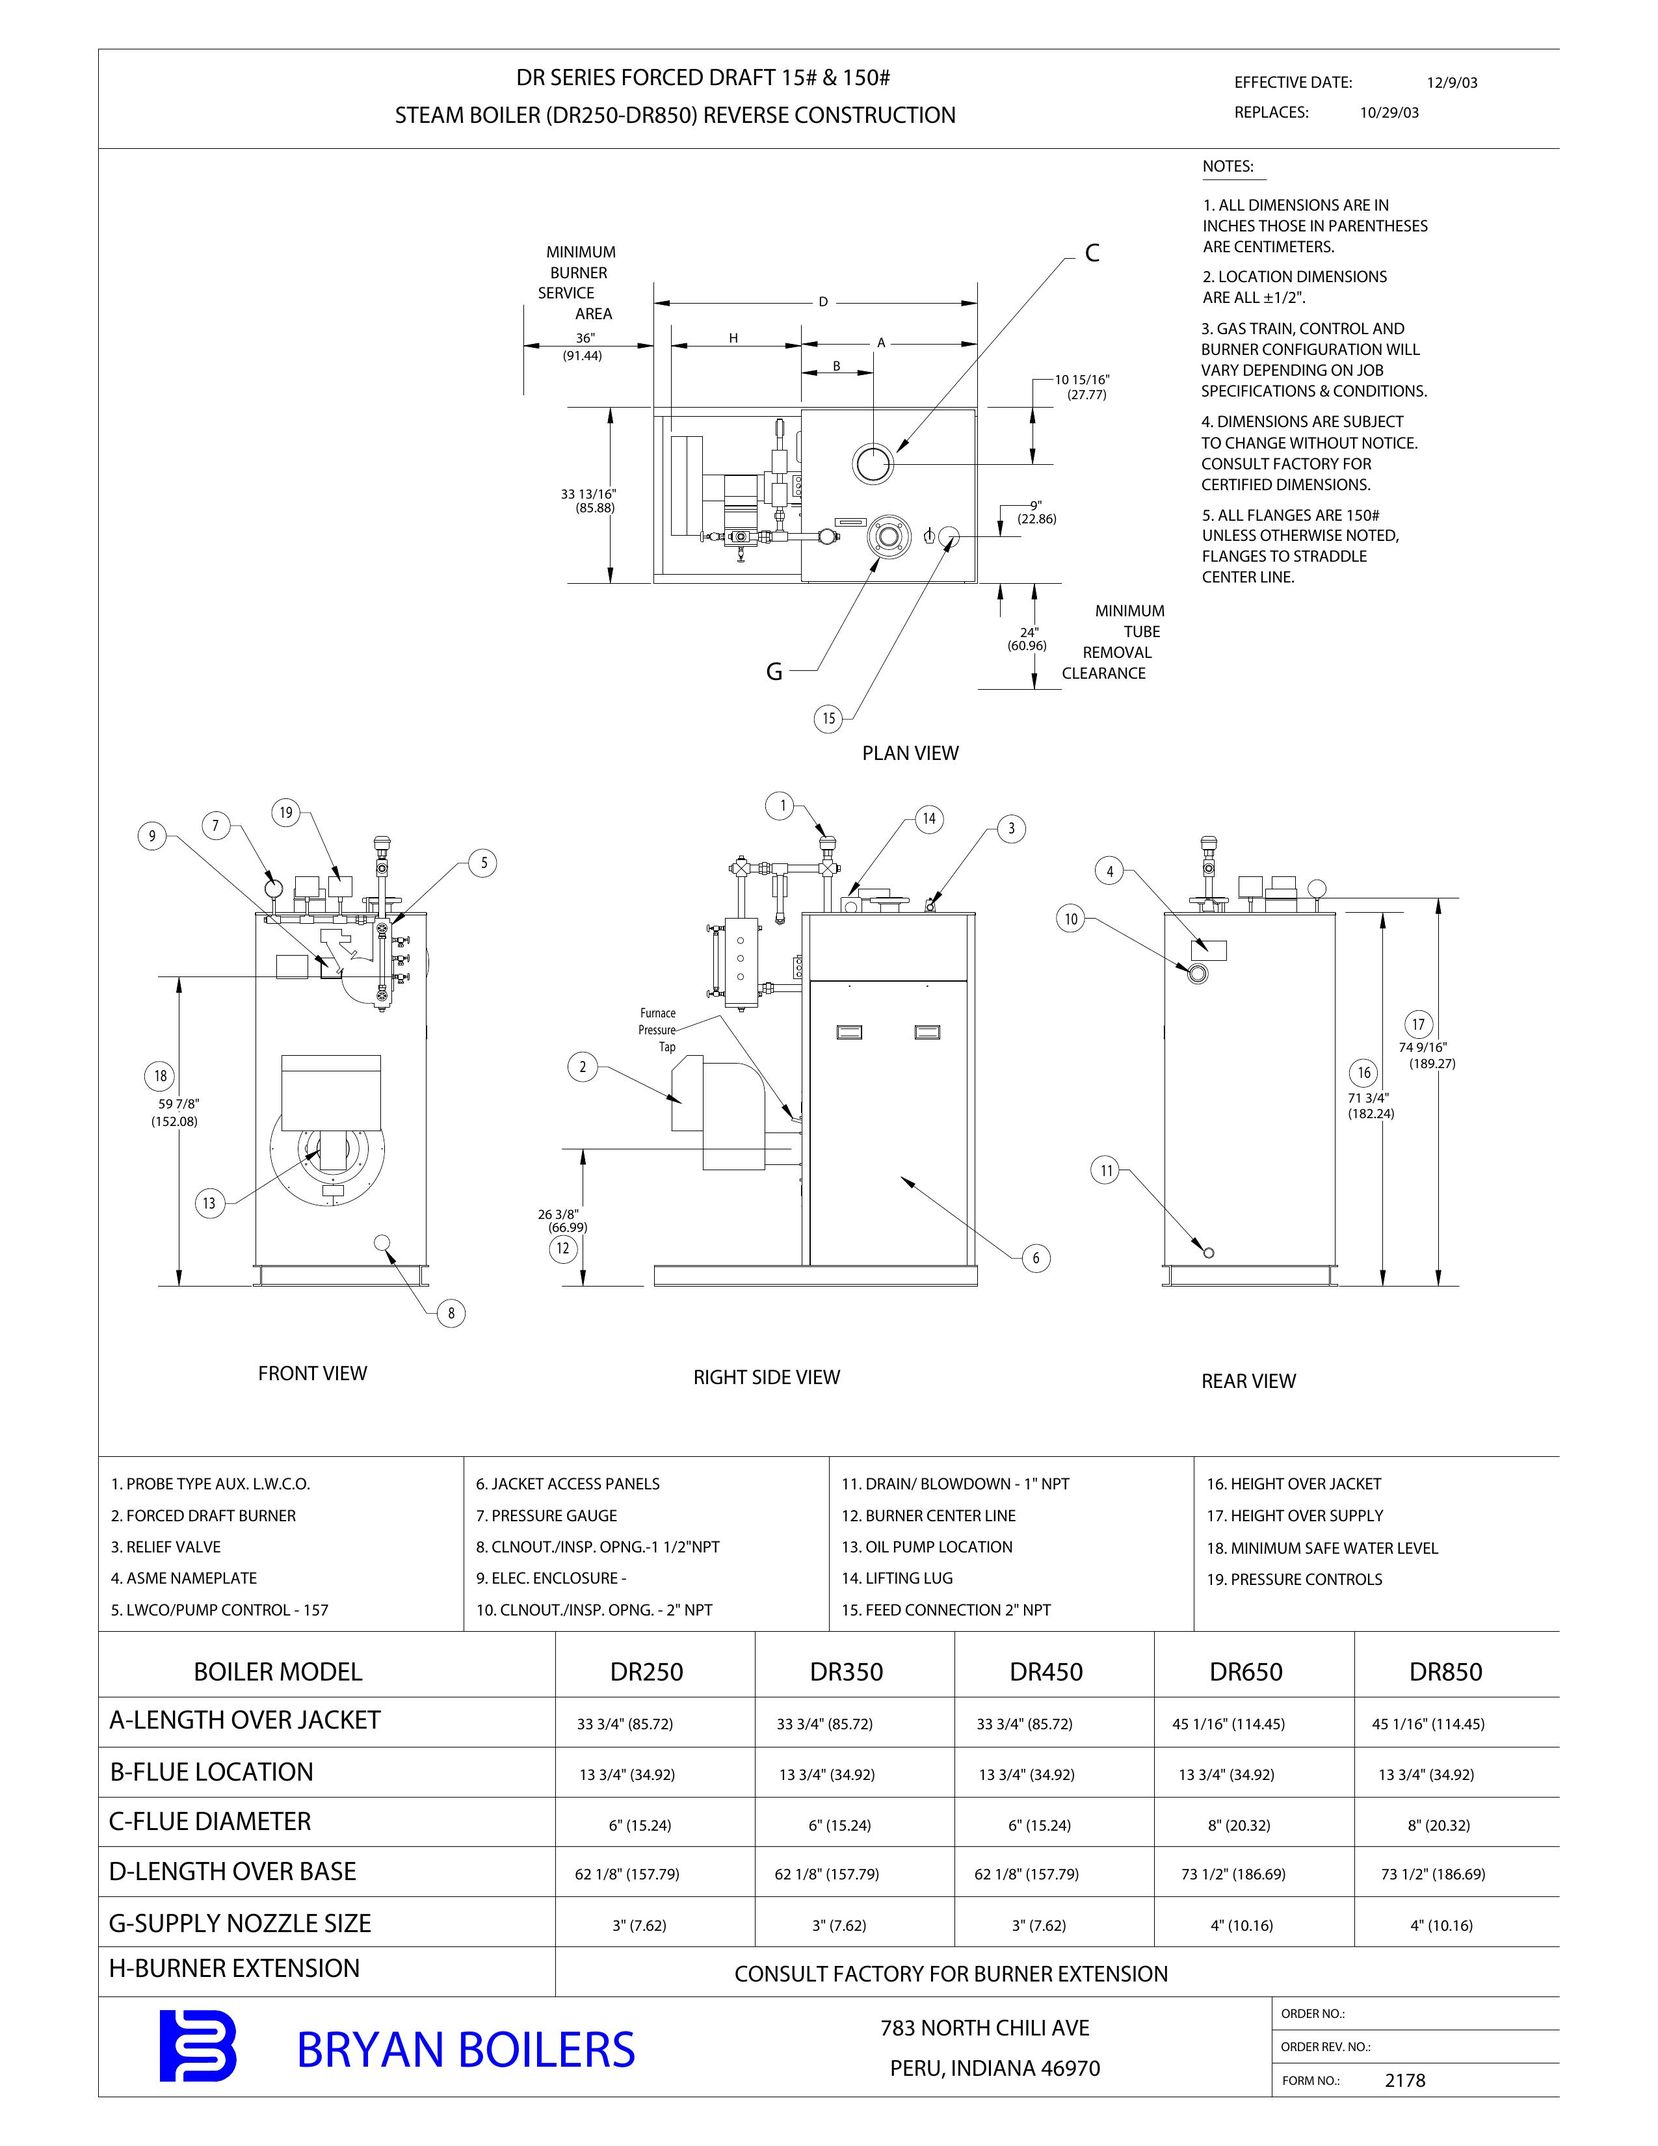 Bryan Boilers DR450 Boiler User Manual